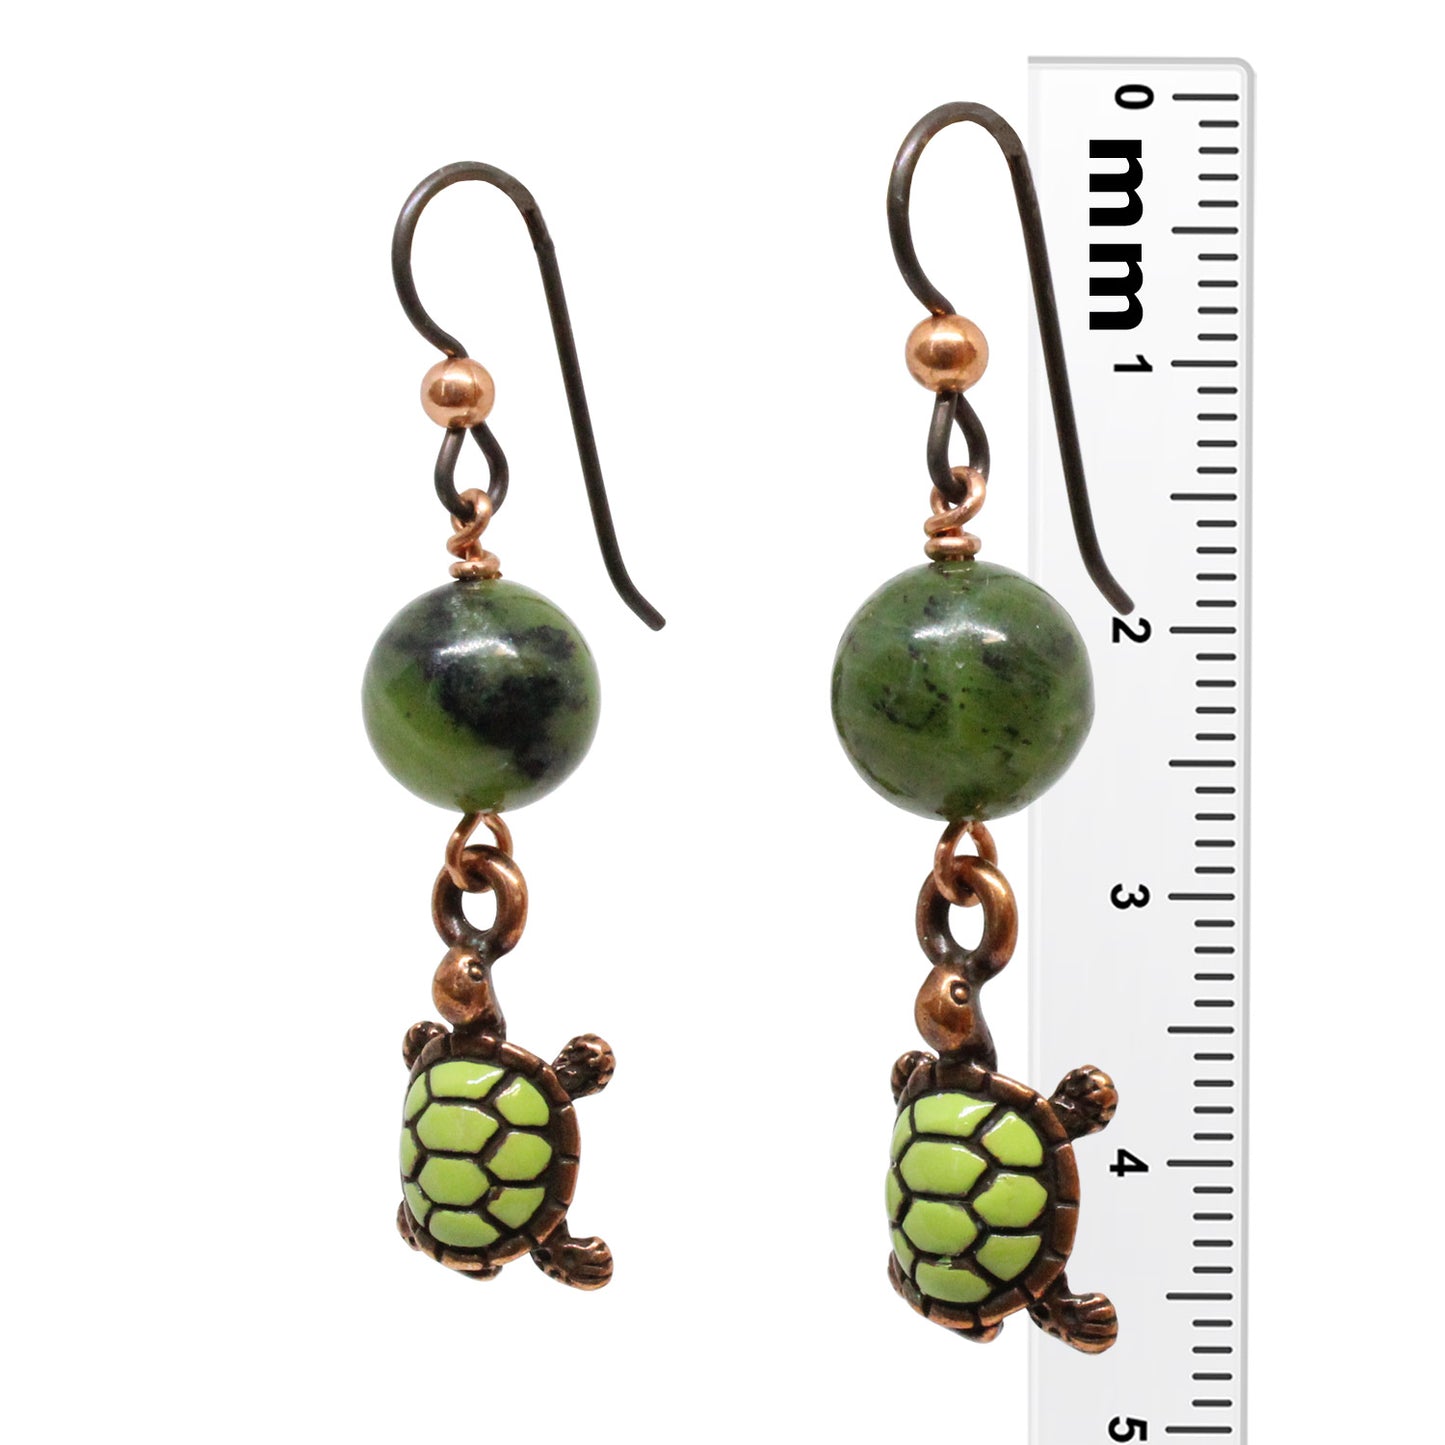 Turtle Earrings / 45mm length / antiqued copper niobium earwires